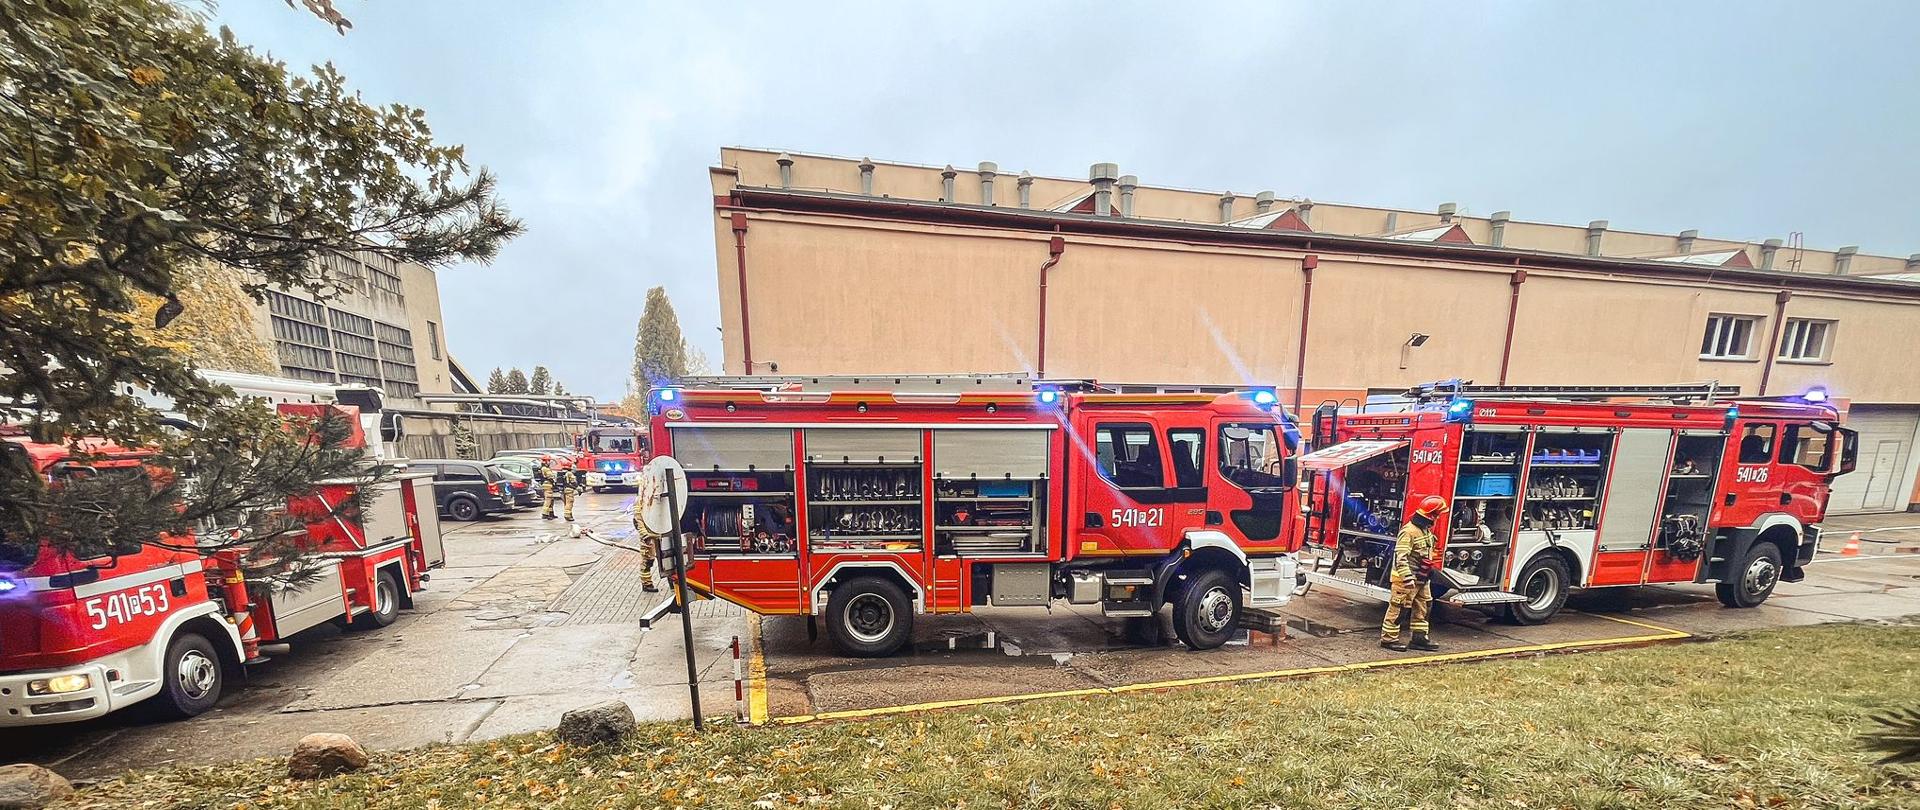 Samochody strażackie stoją przy budynku szkoły. Na drugim planie widać zaparkowane samochody oraz strażaków .